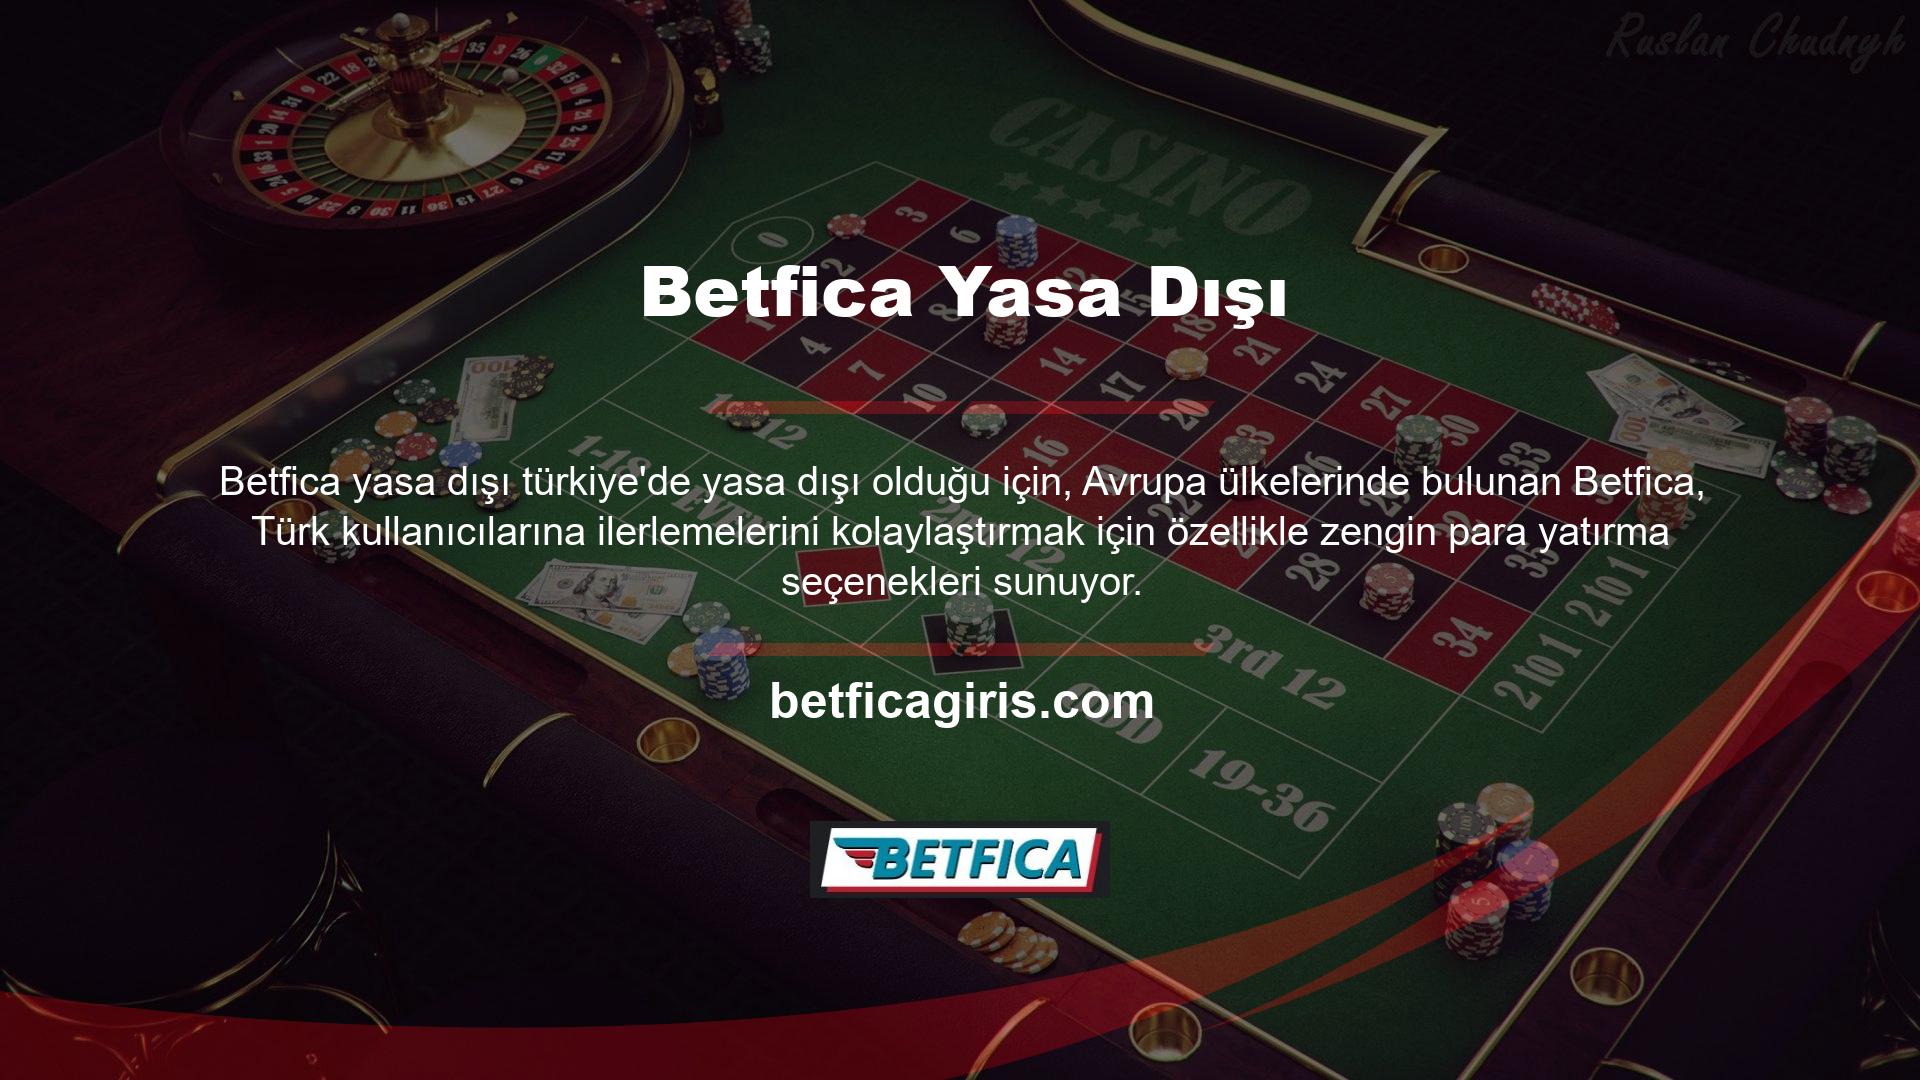 Betfica üye iseniz Türkiye'nin en ünlü para yatırma seçeneklerini kullanarak para yatırabilirsiniz